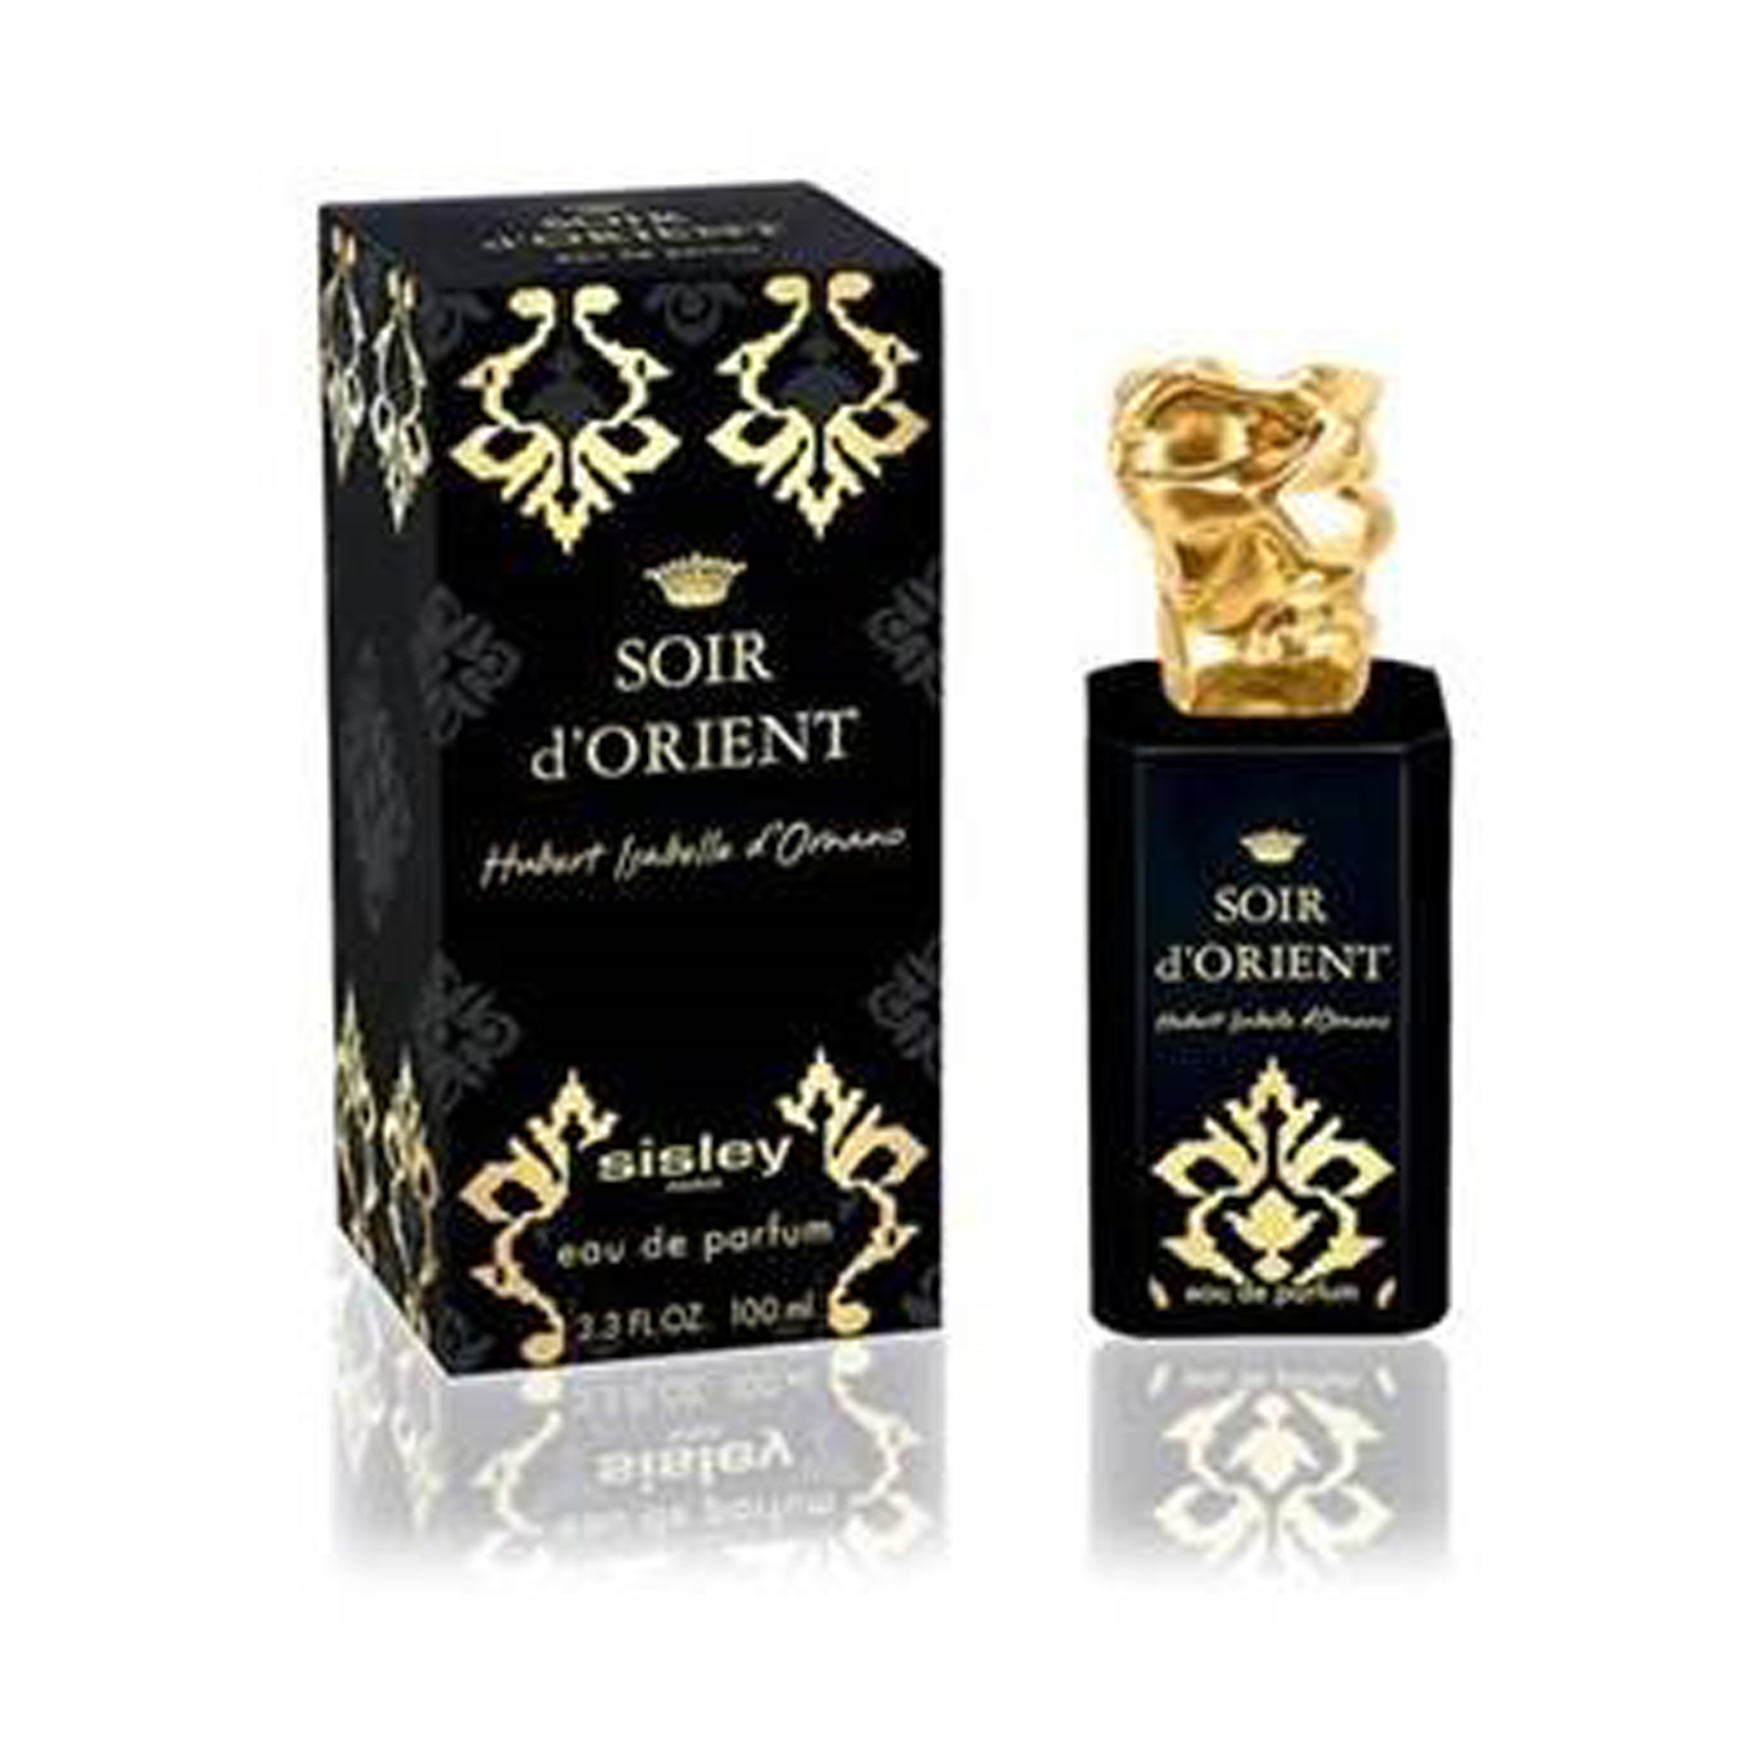 Sisley-Paris Eau de Parfum Soir d'Orient | Space NK